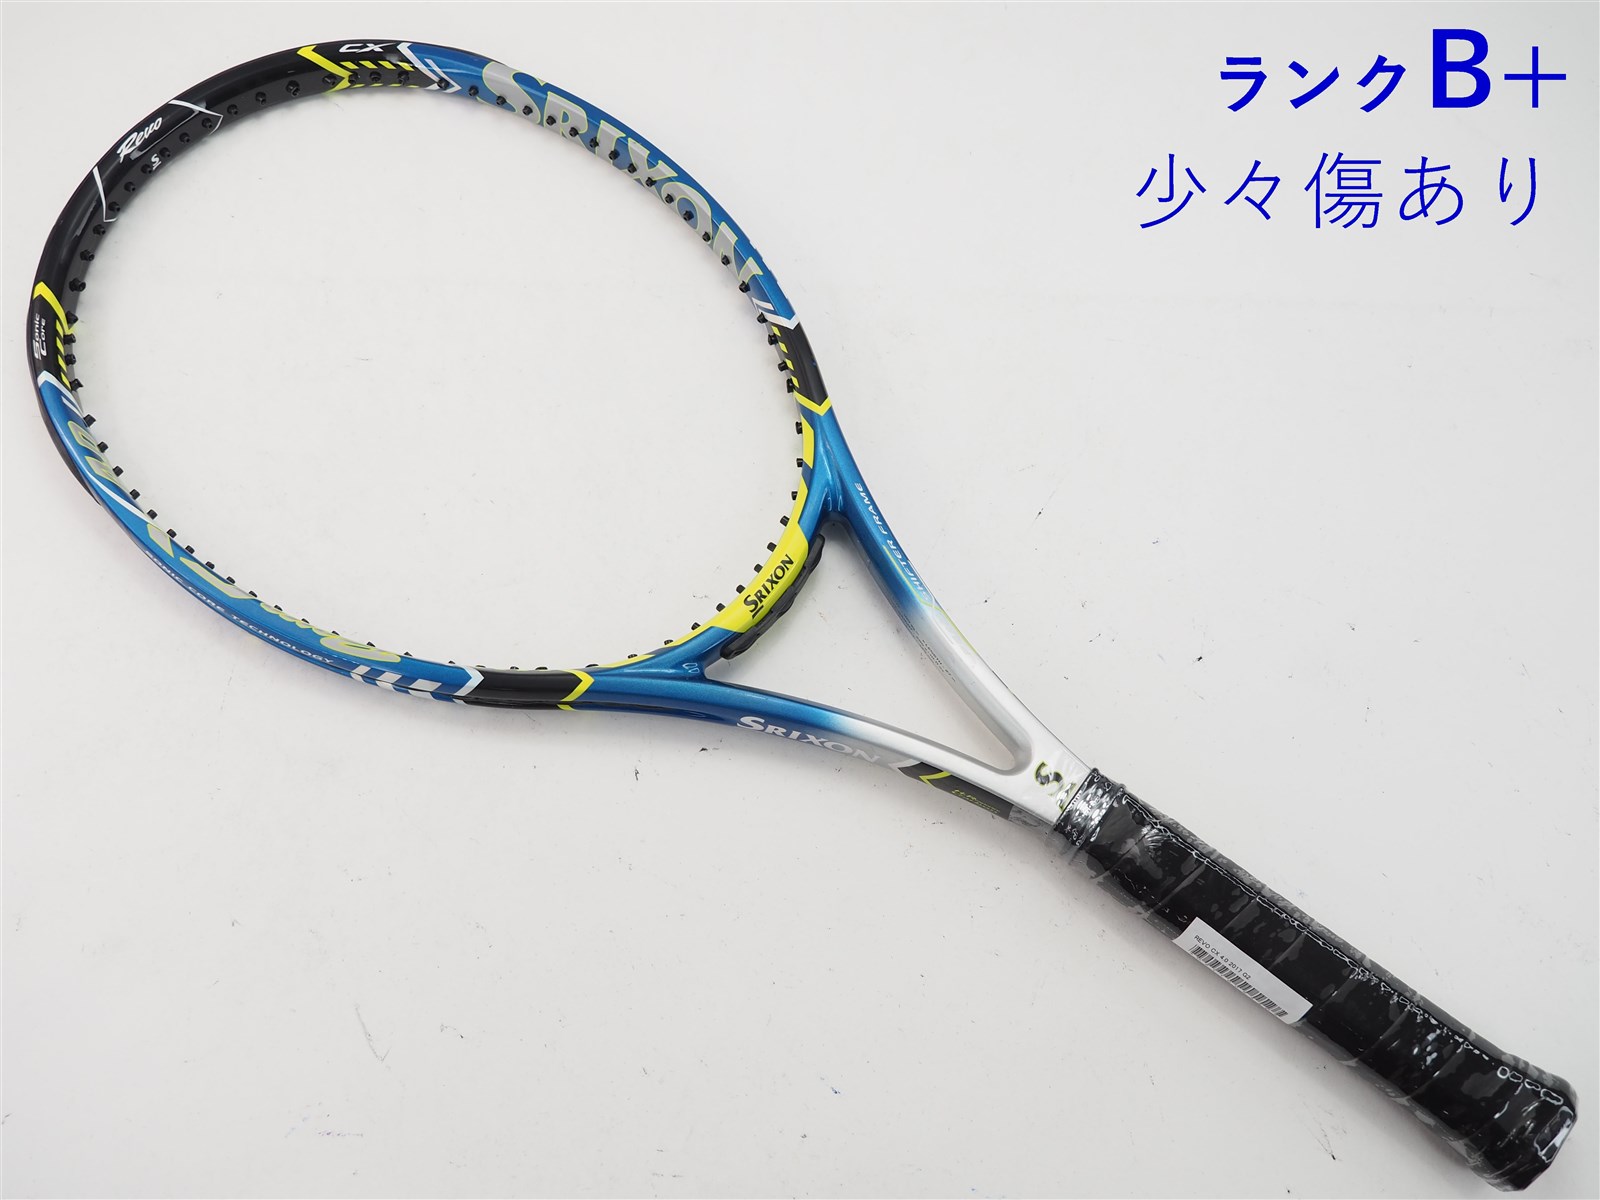 テニスラケット スリクソン revo cx2.0 305g - ラケット(硬式用)